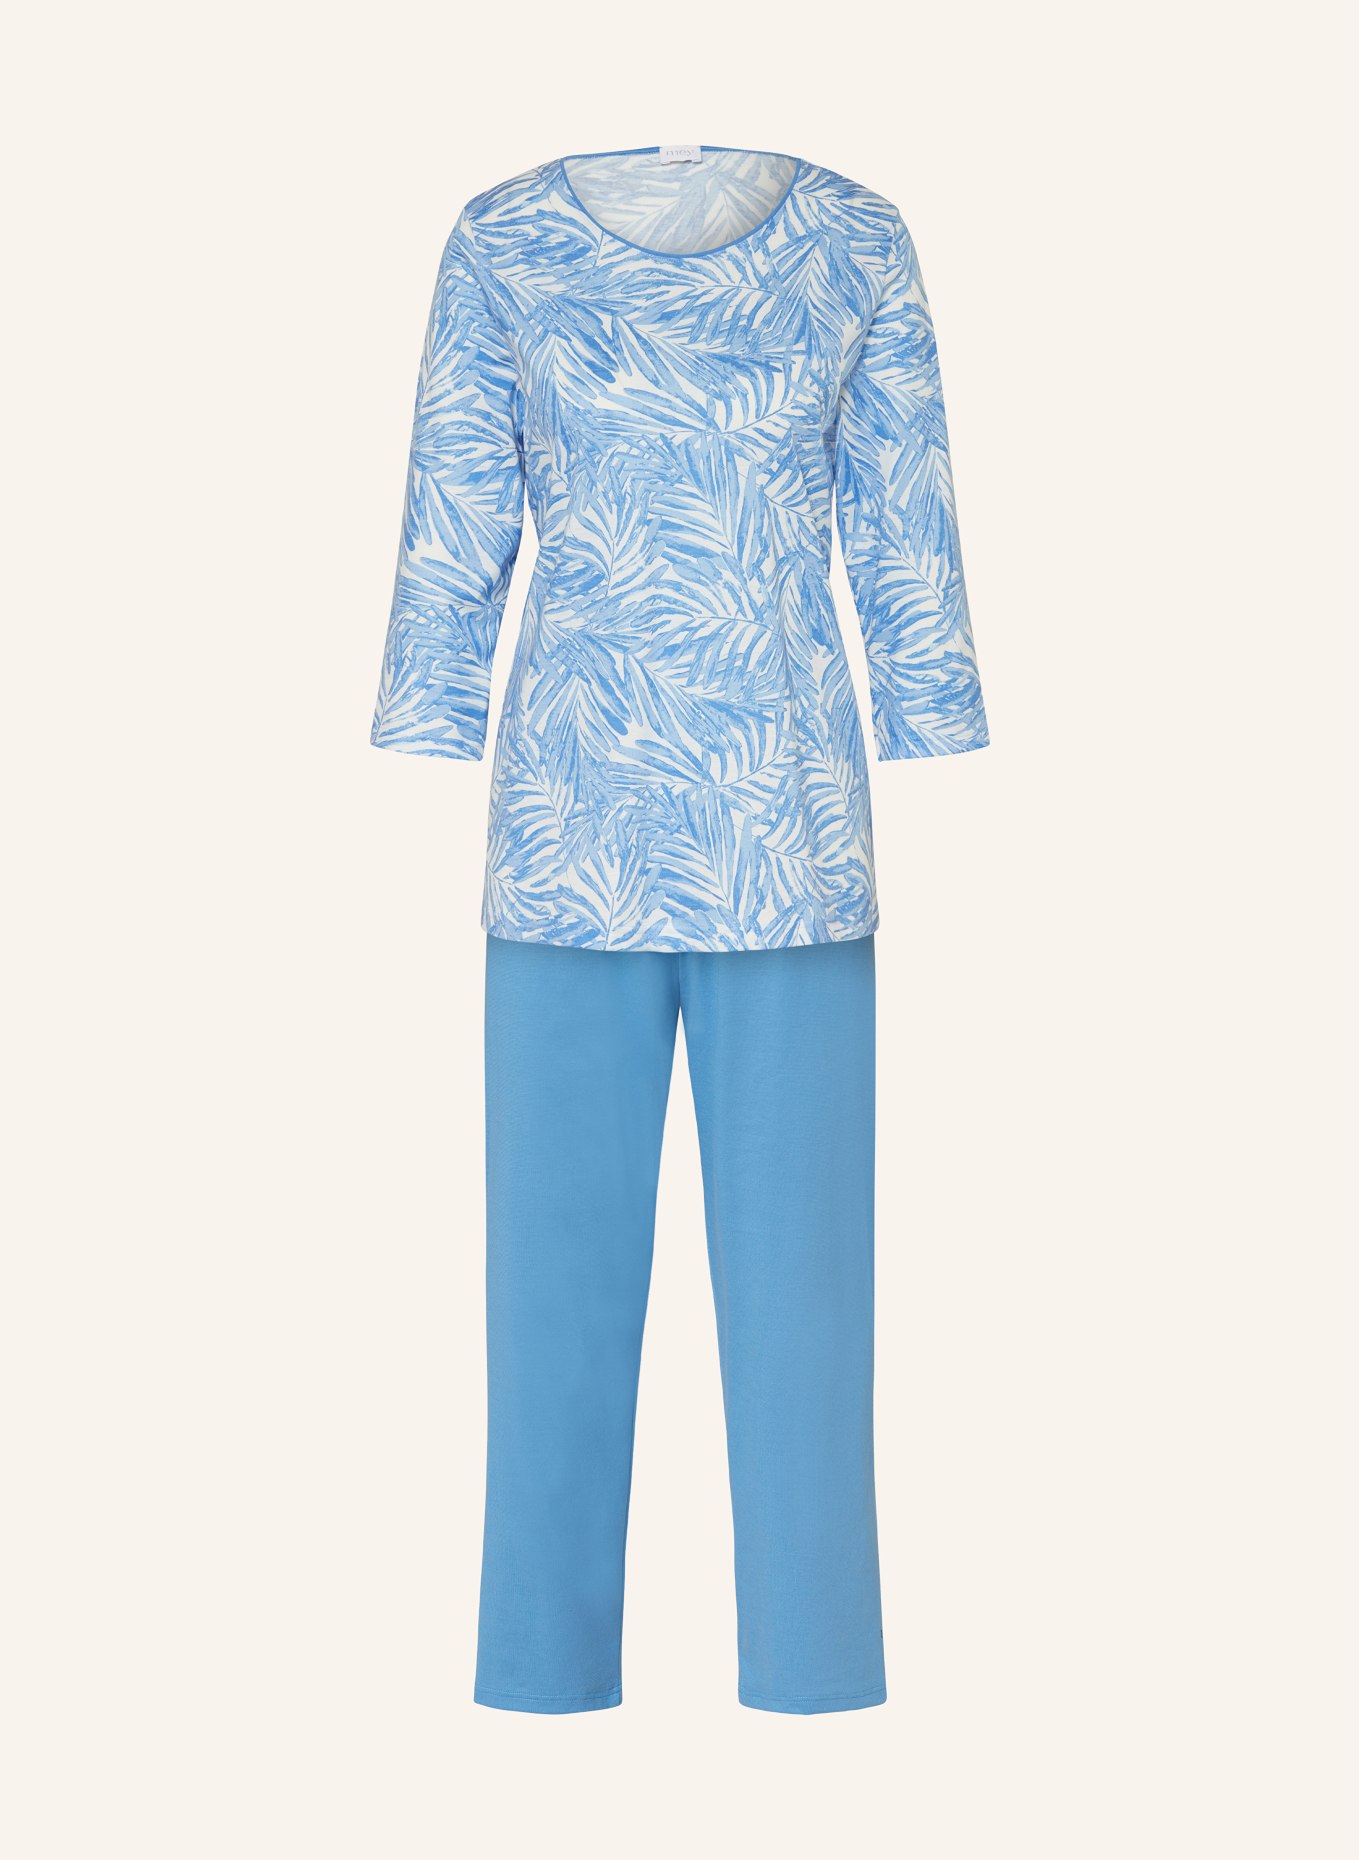 mey 7/8 pajamas series IVANI, Color: LIGHT BLUE/ WHITE (Image 1)